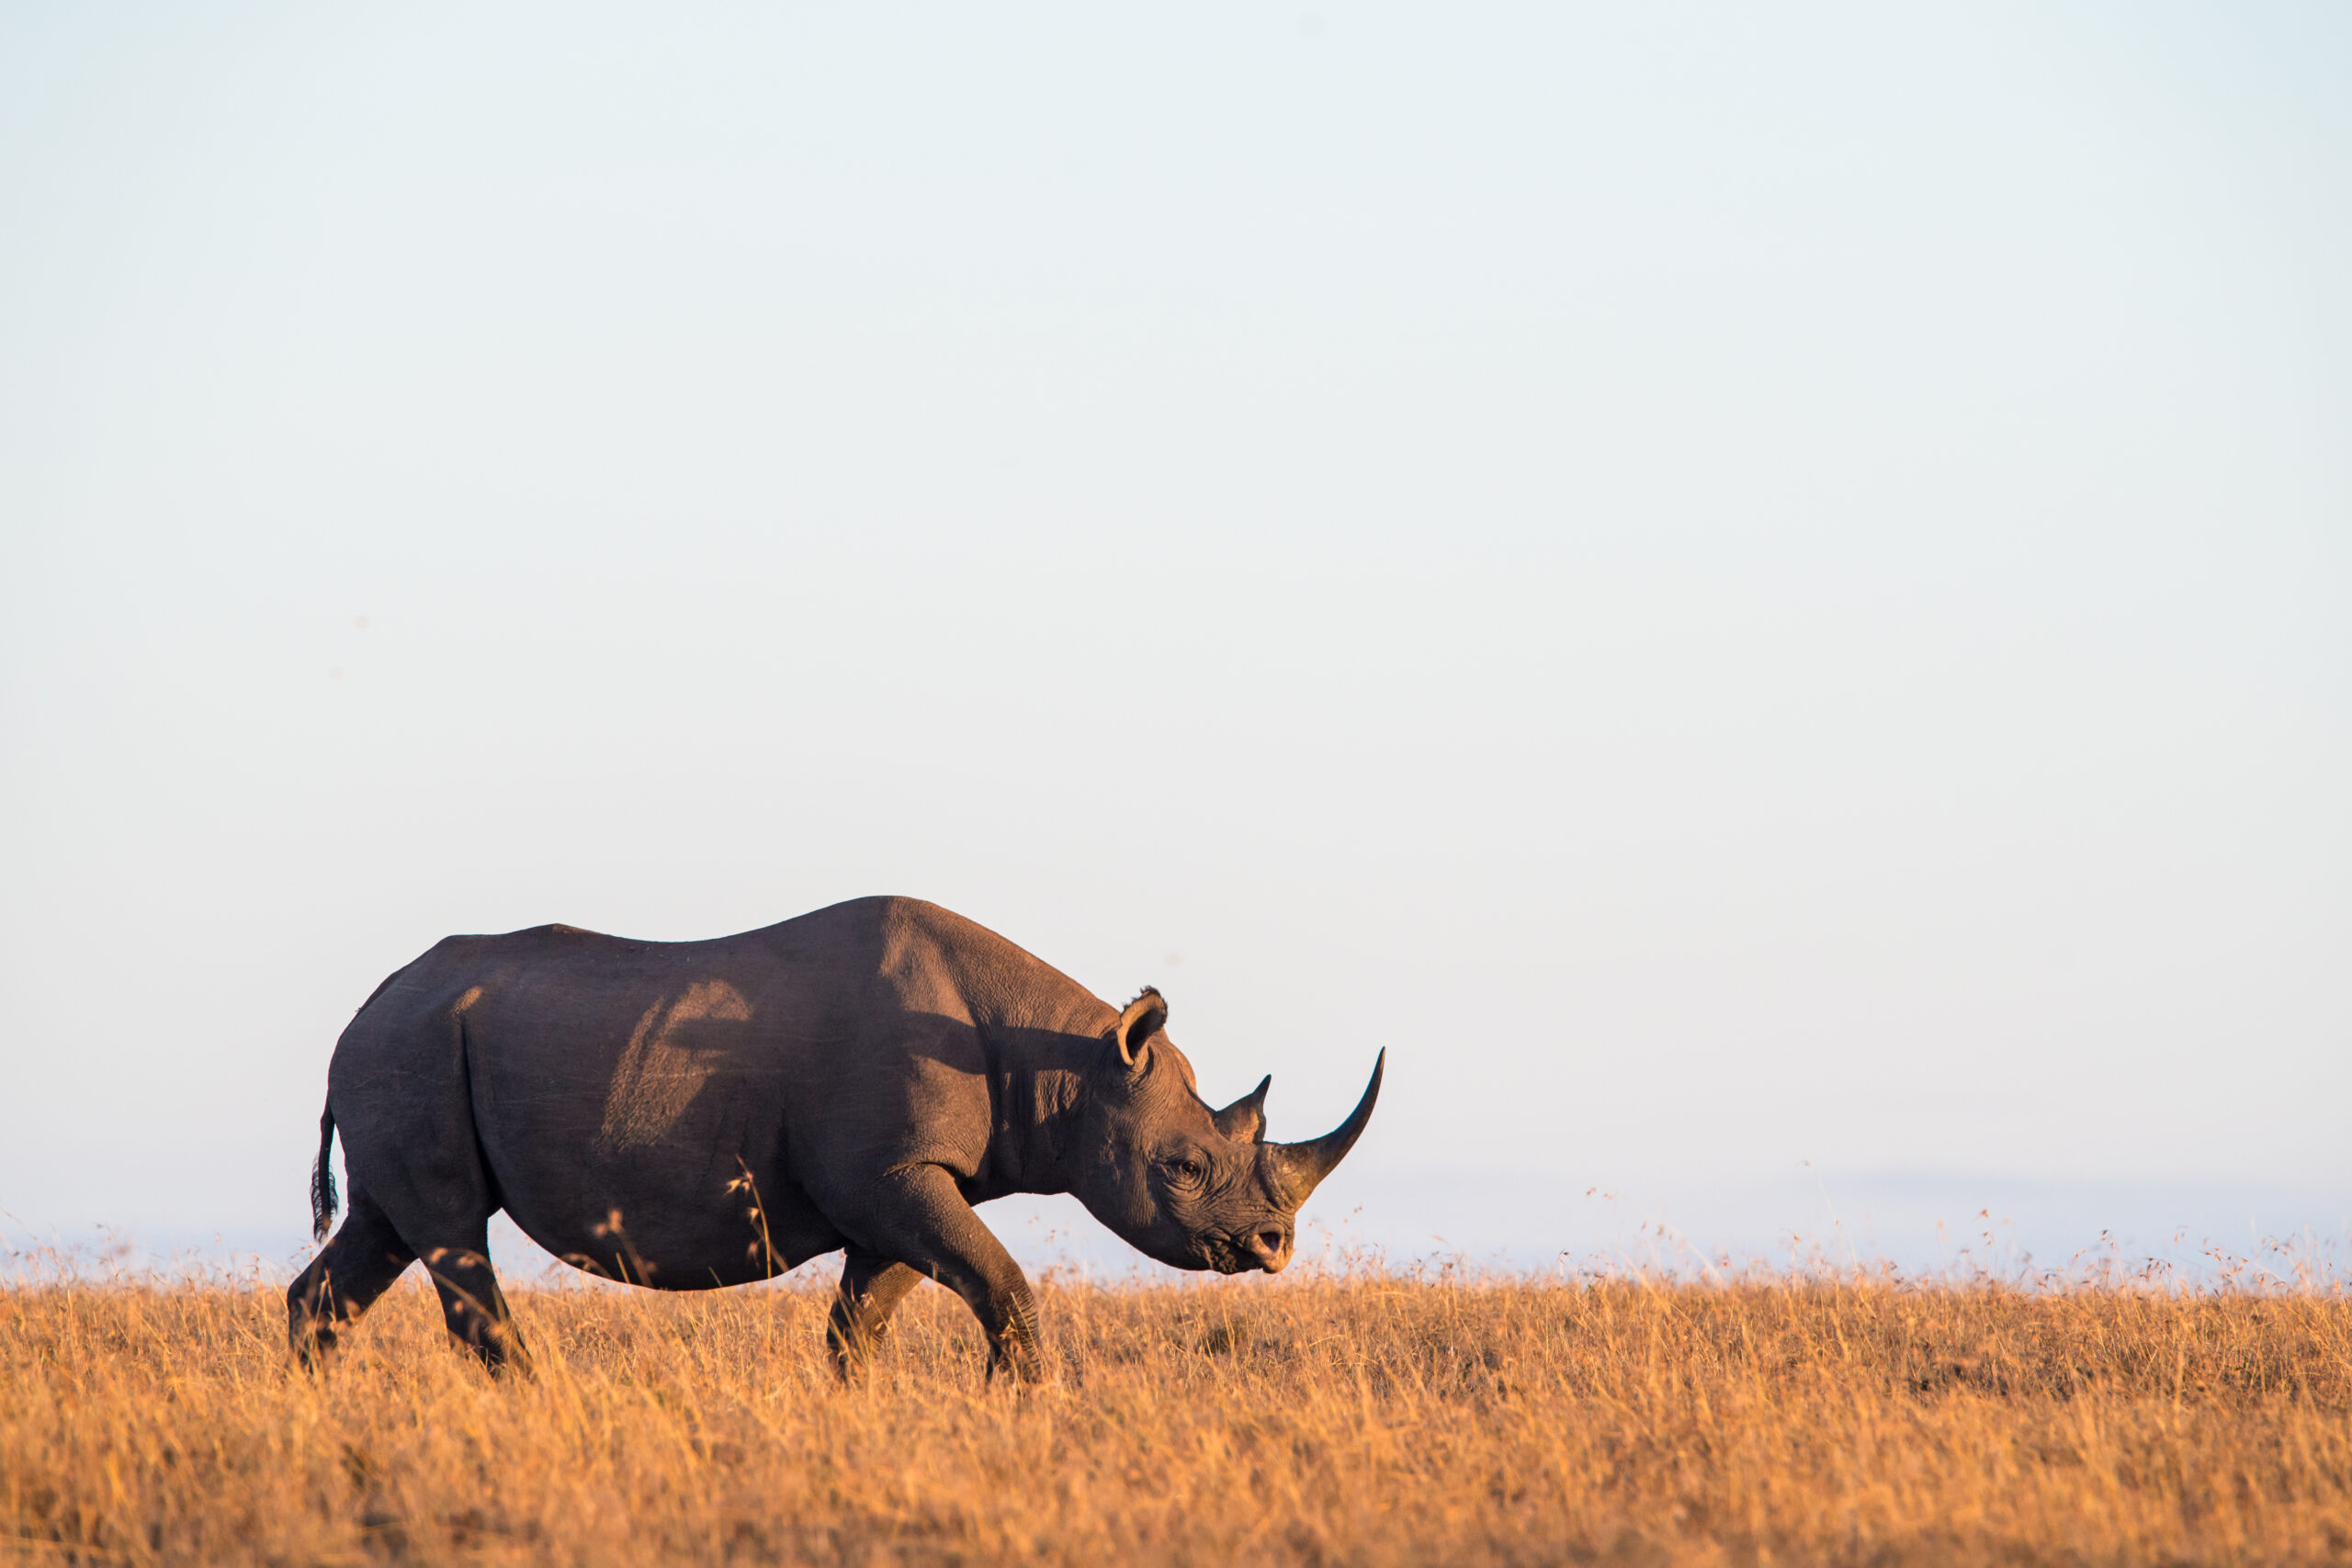 The Rhino Bond could save black rhinos.